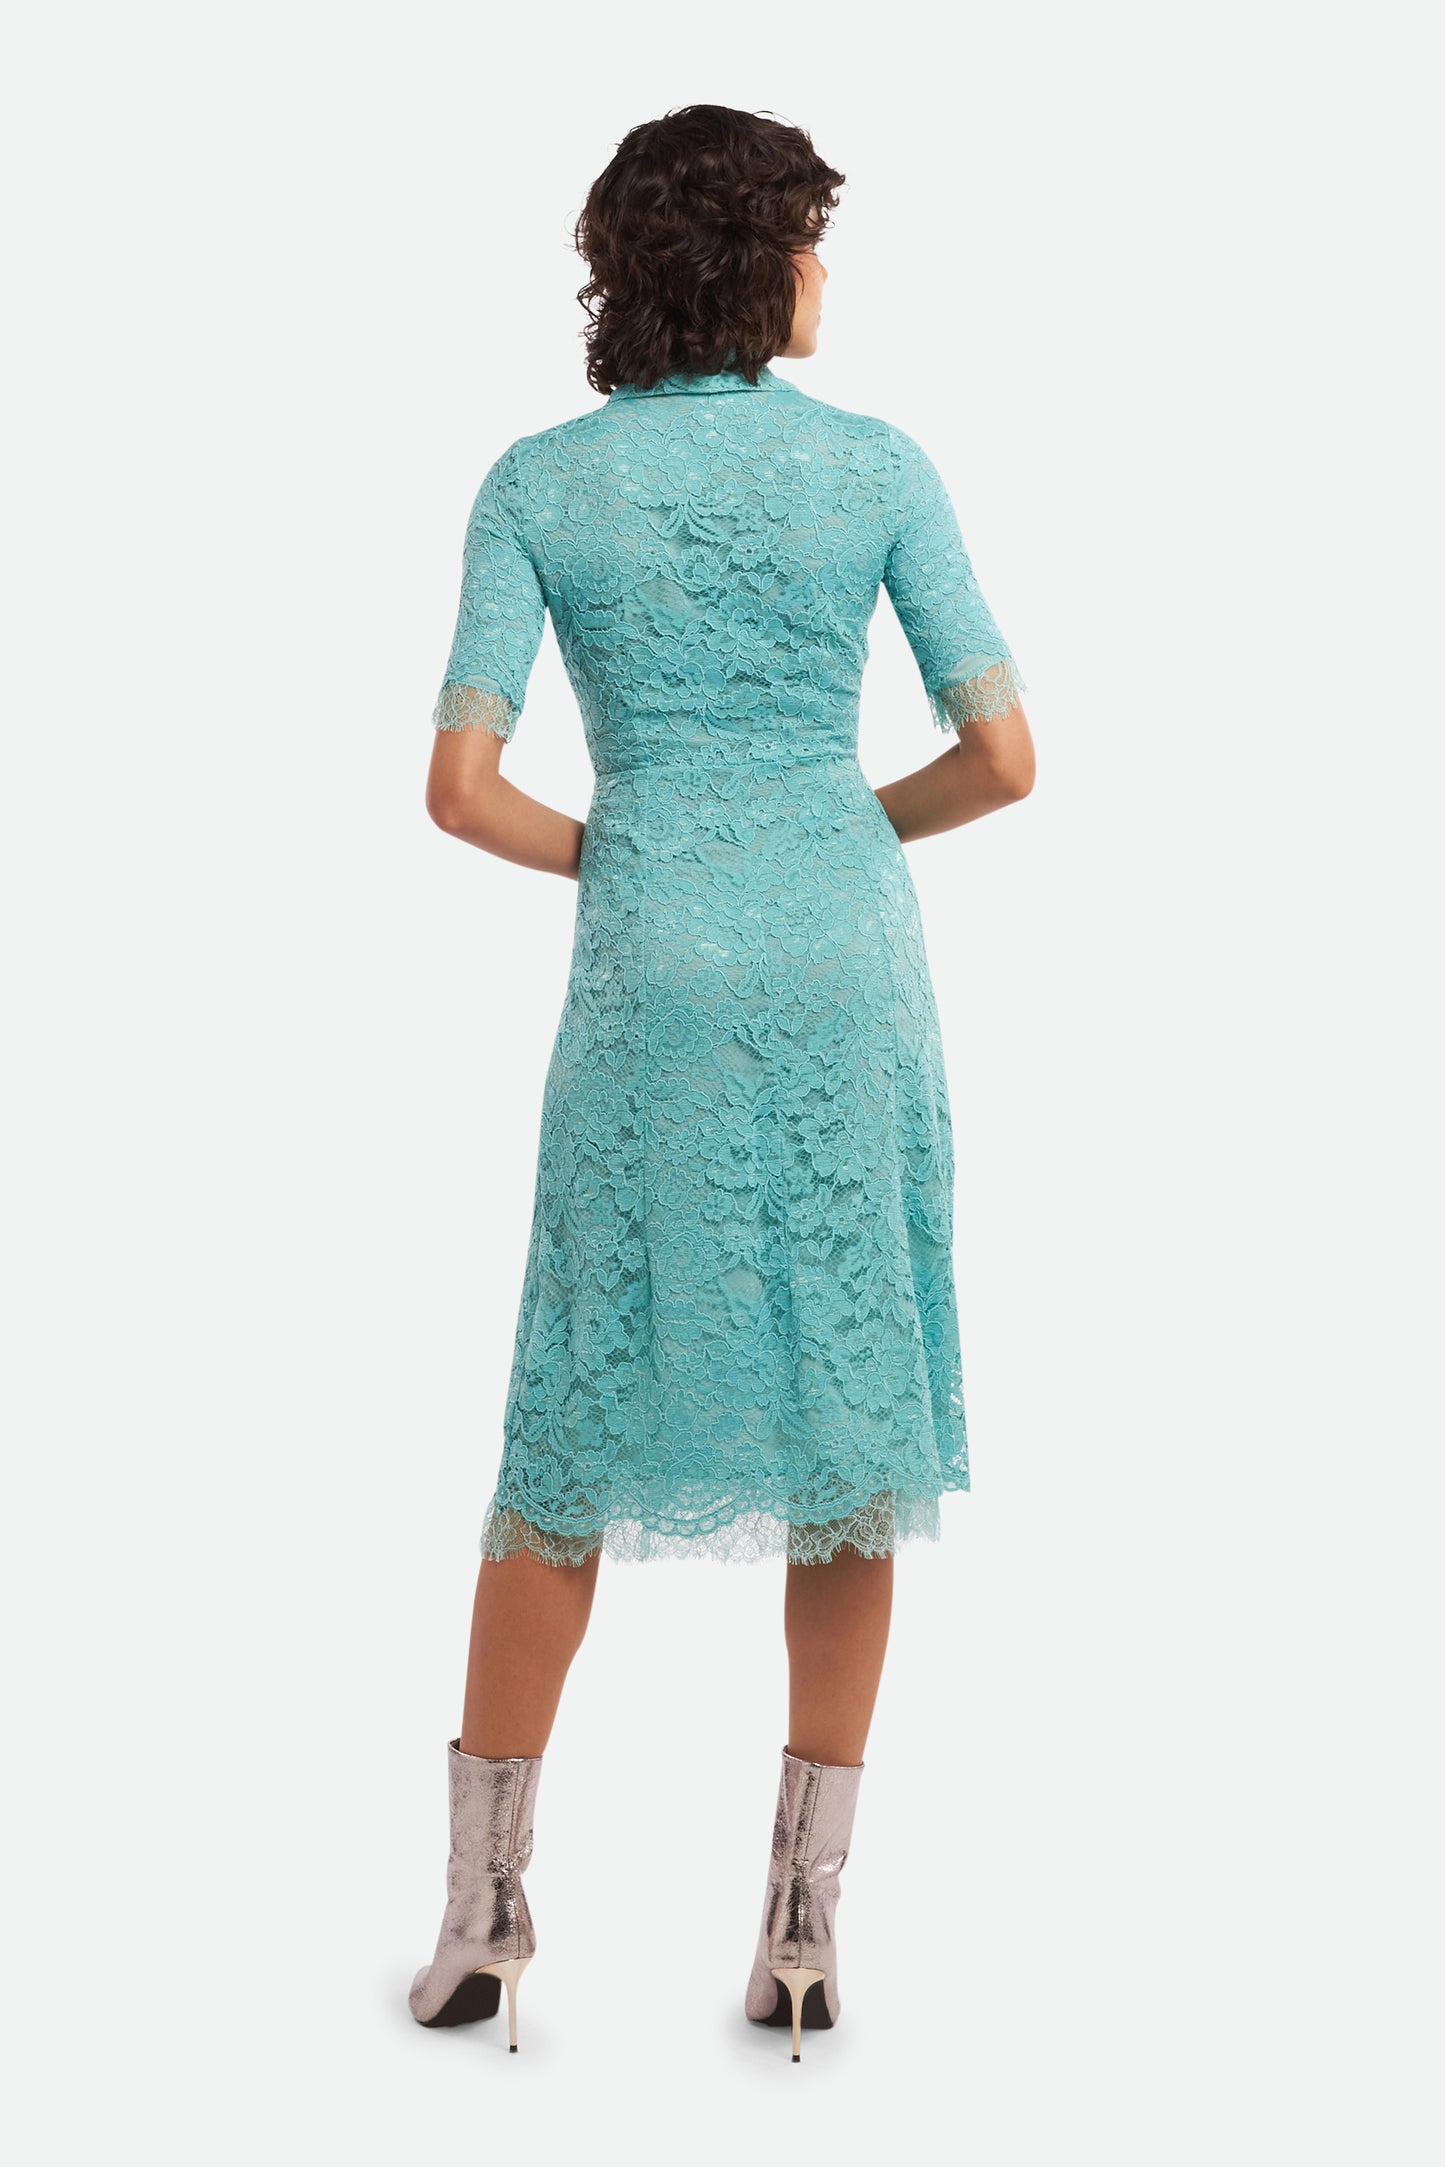 Elisabetta Franchi Light Blue Lace Dress